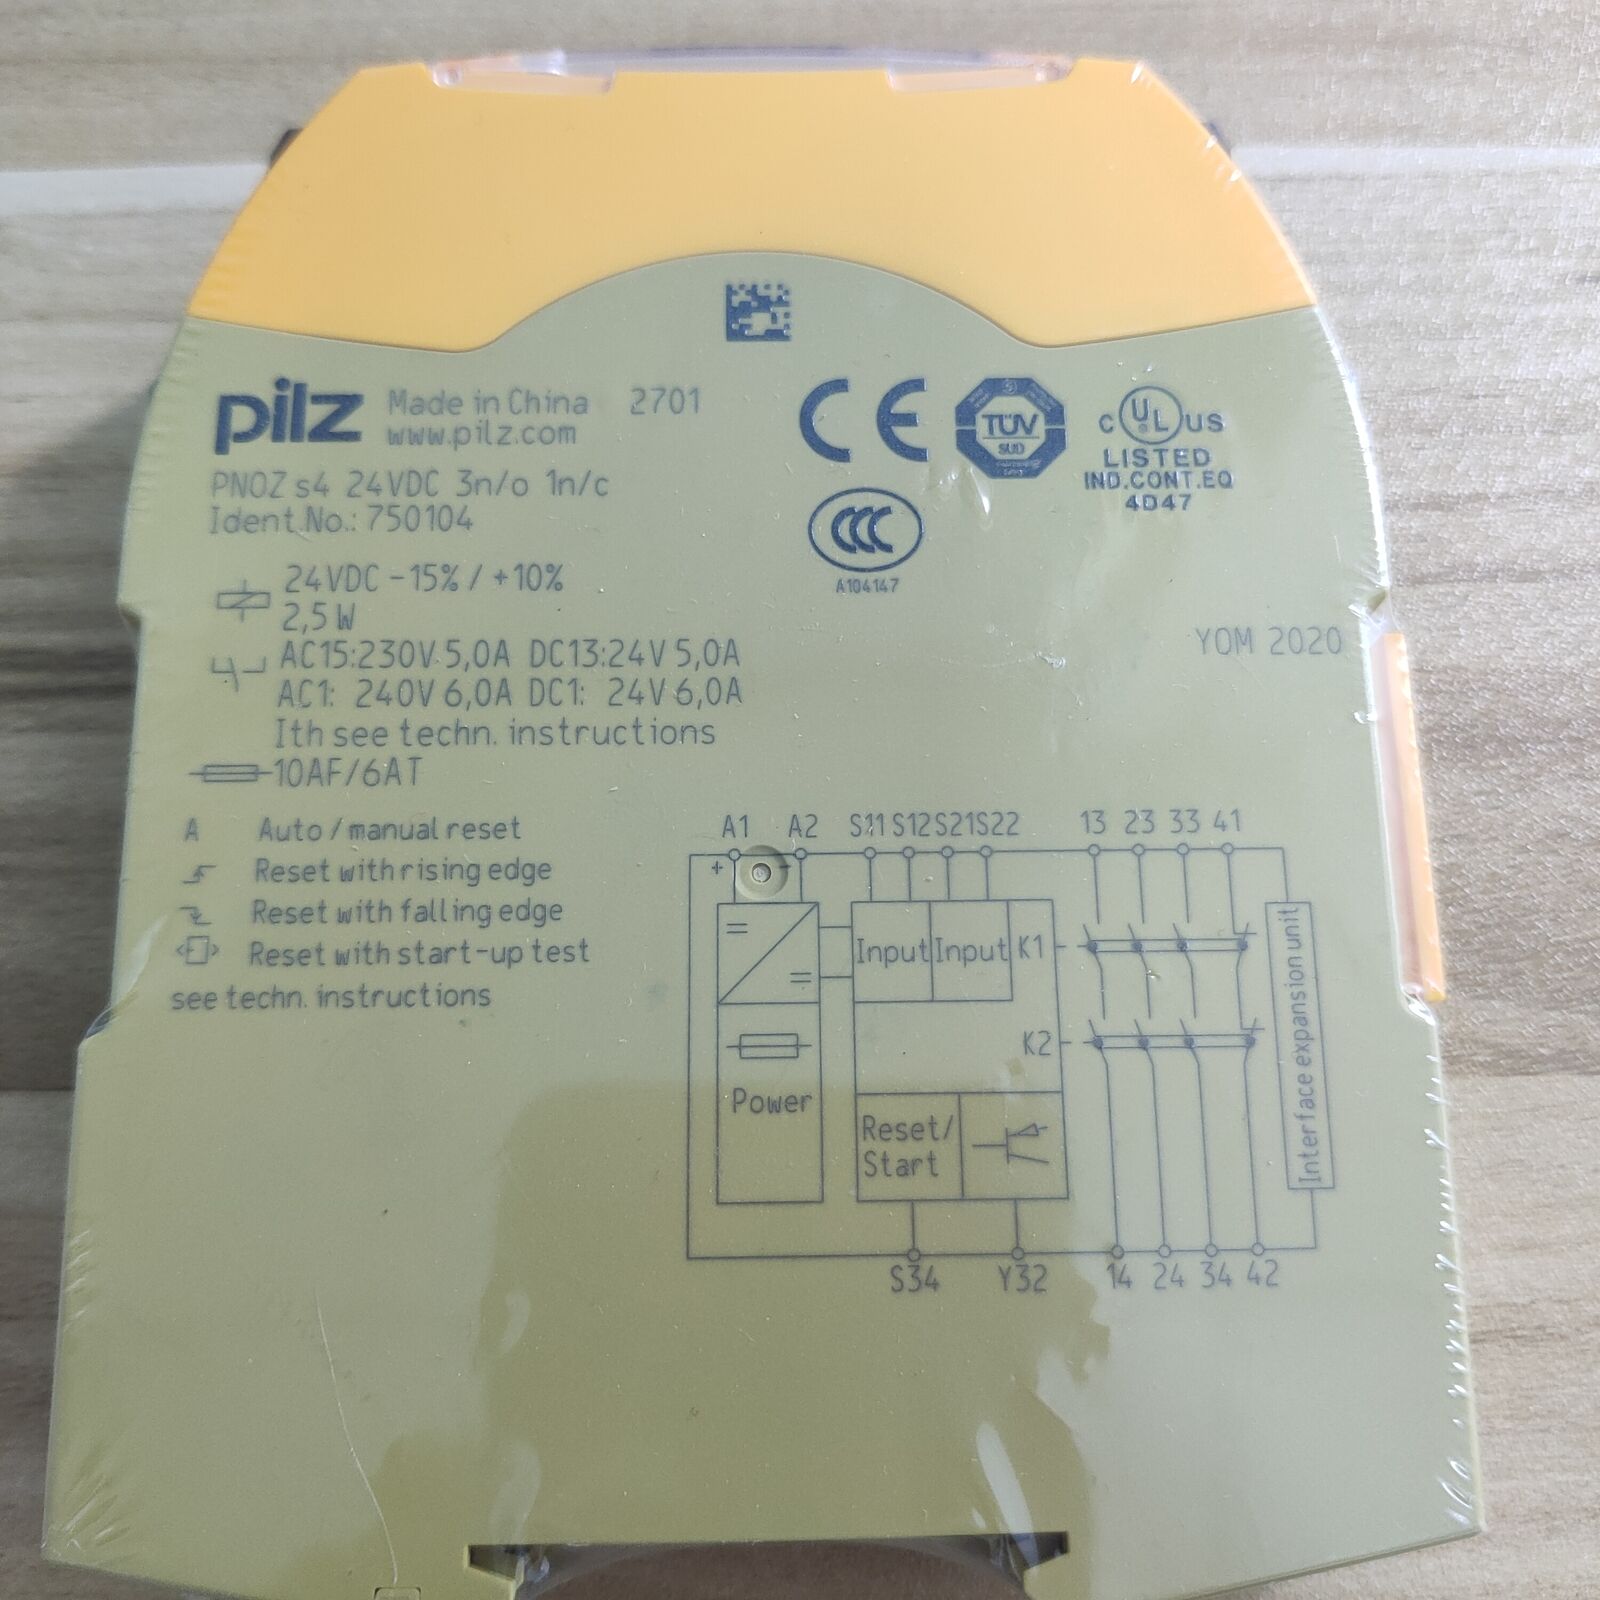 1PC New Pilz 750104 PNOZ s4 Safety Relay 24VDC 3 1